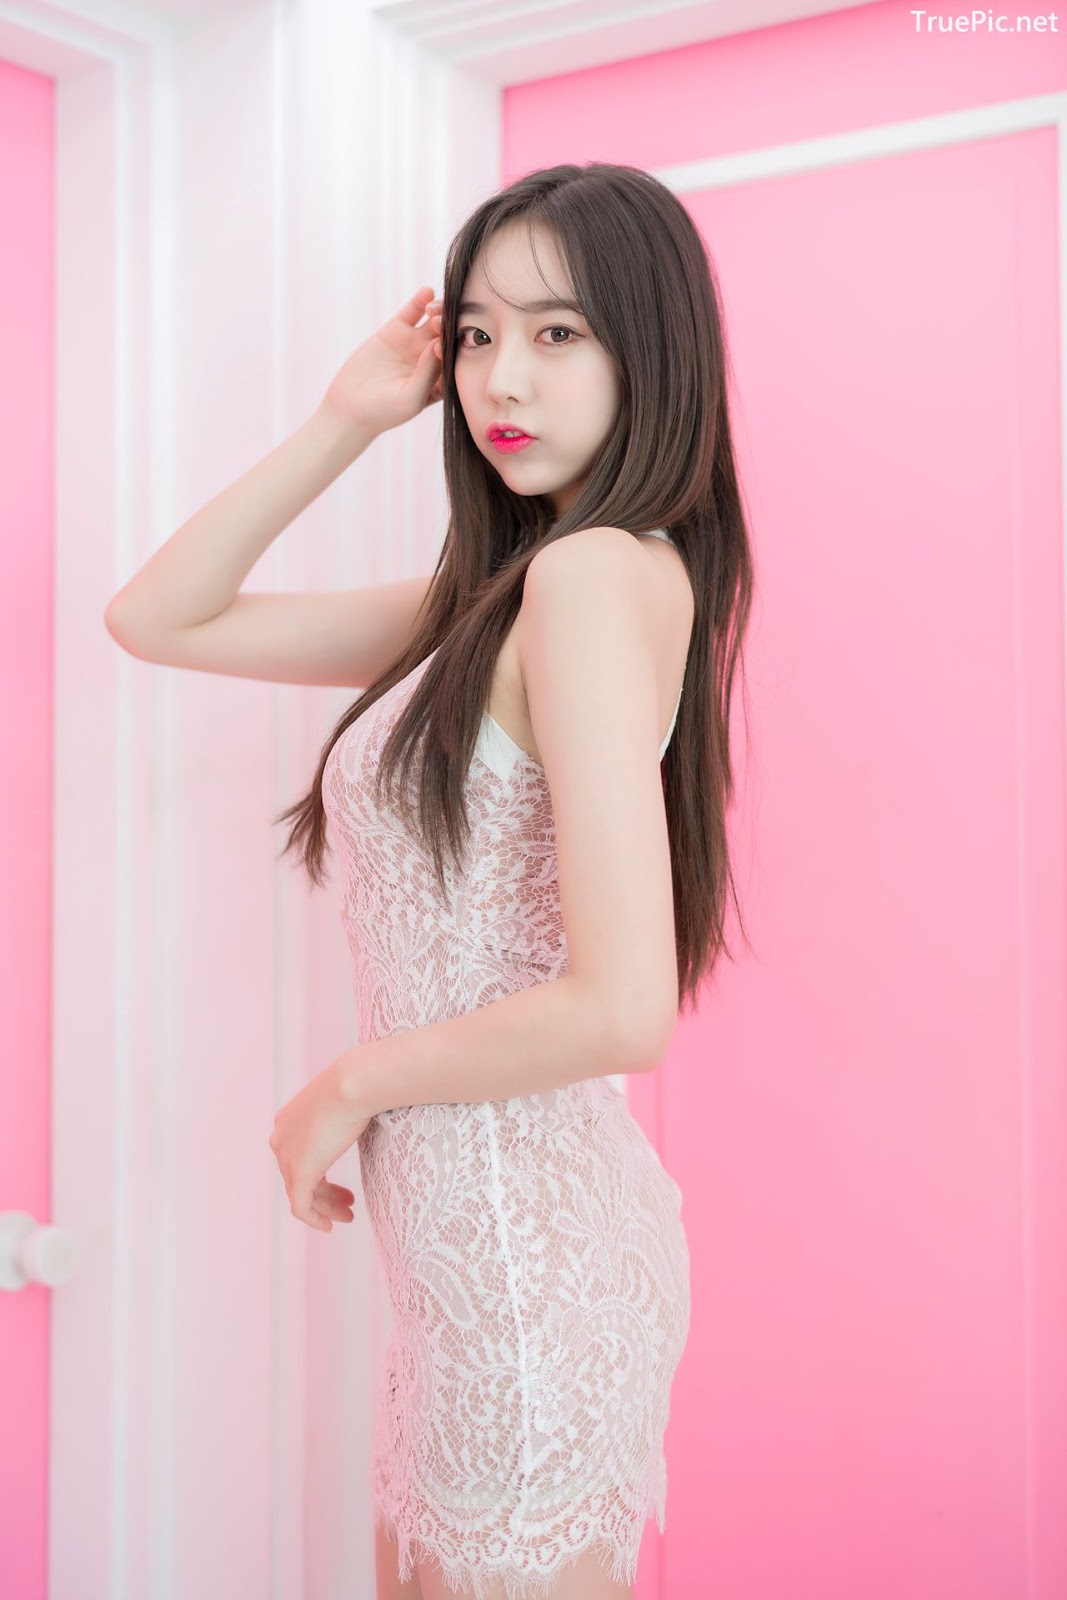 Image-Korean-Hot-Model-Go-Eun-Yang-Indoor-Photoshoot-Collection-TruePic.net- Picture-88